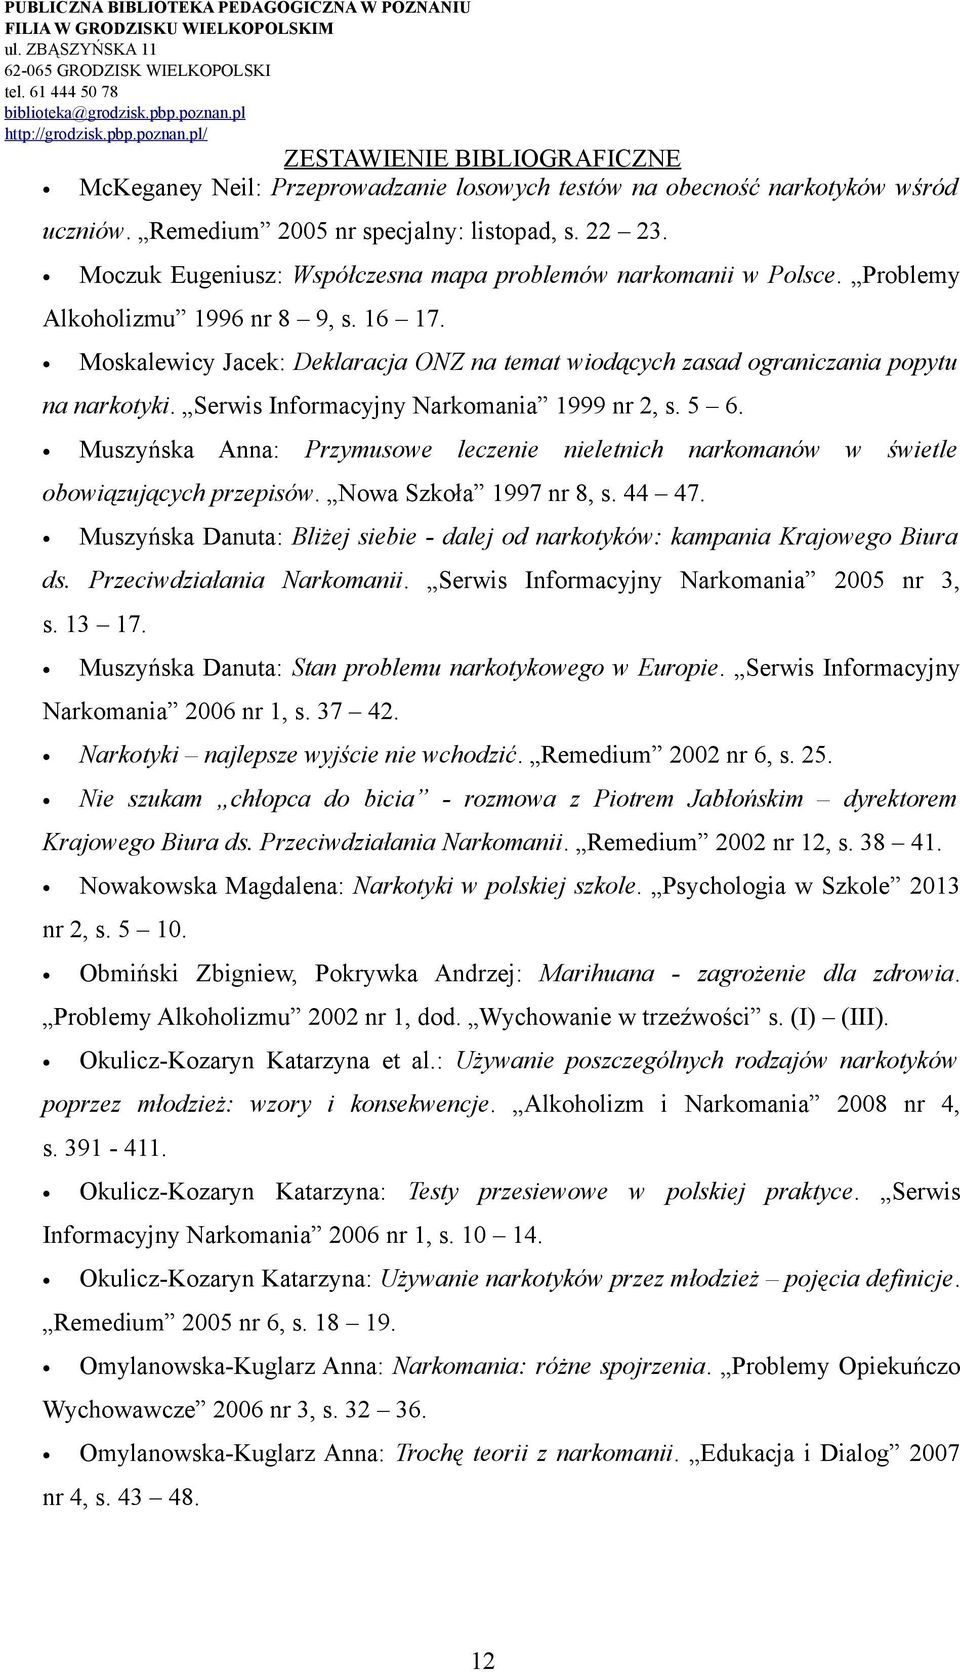 Muszyńska Anna: Przymusowe leczenie nieletnich narkomanów w świetle obowiązujących przepisów. Nowa Szkoła 1997 nr 8, s. 44 47.